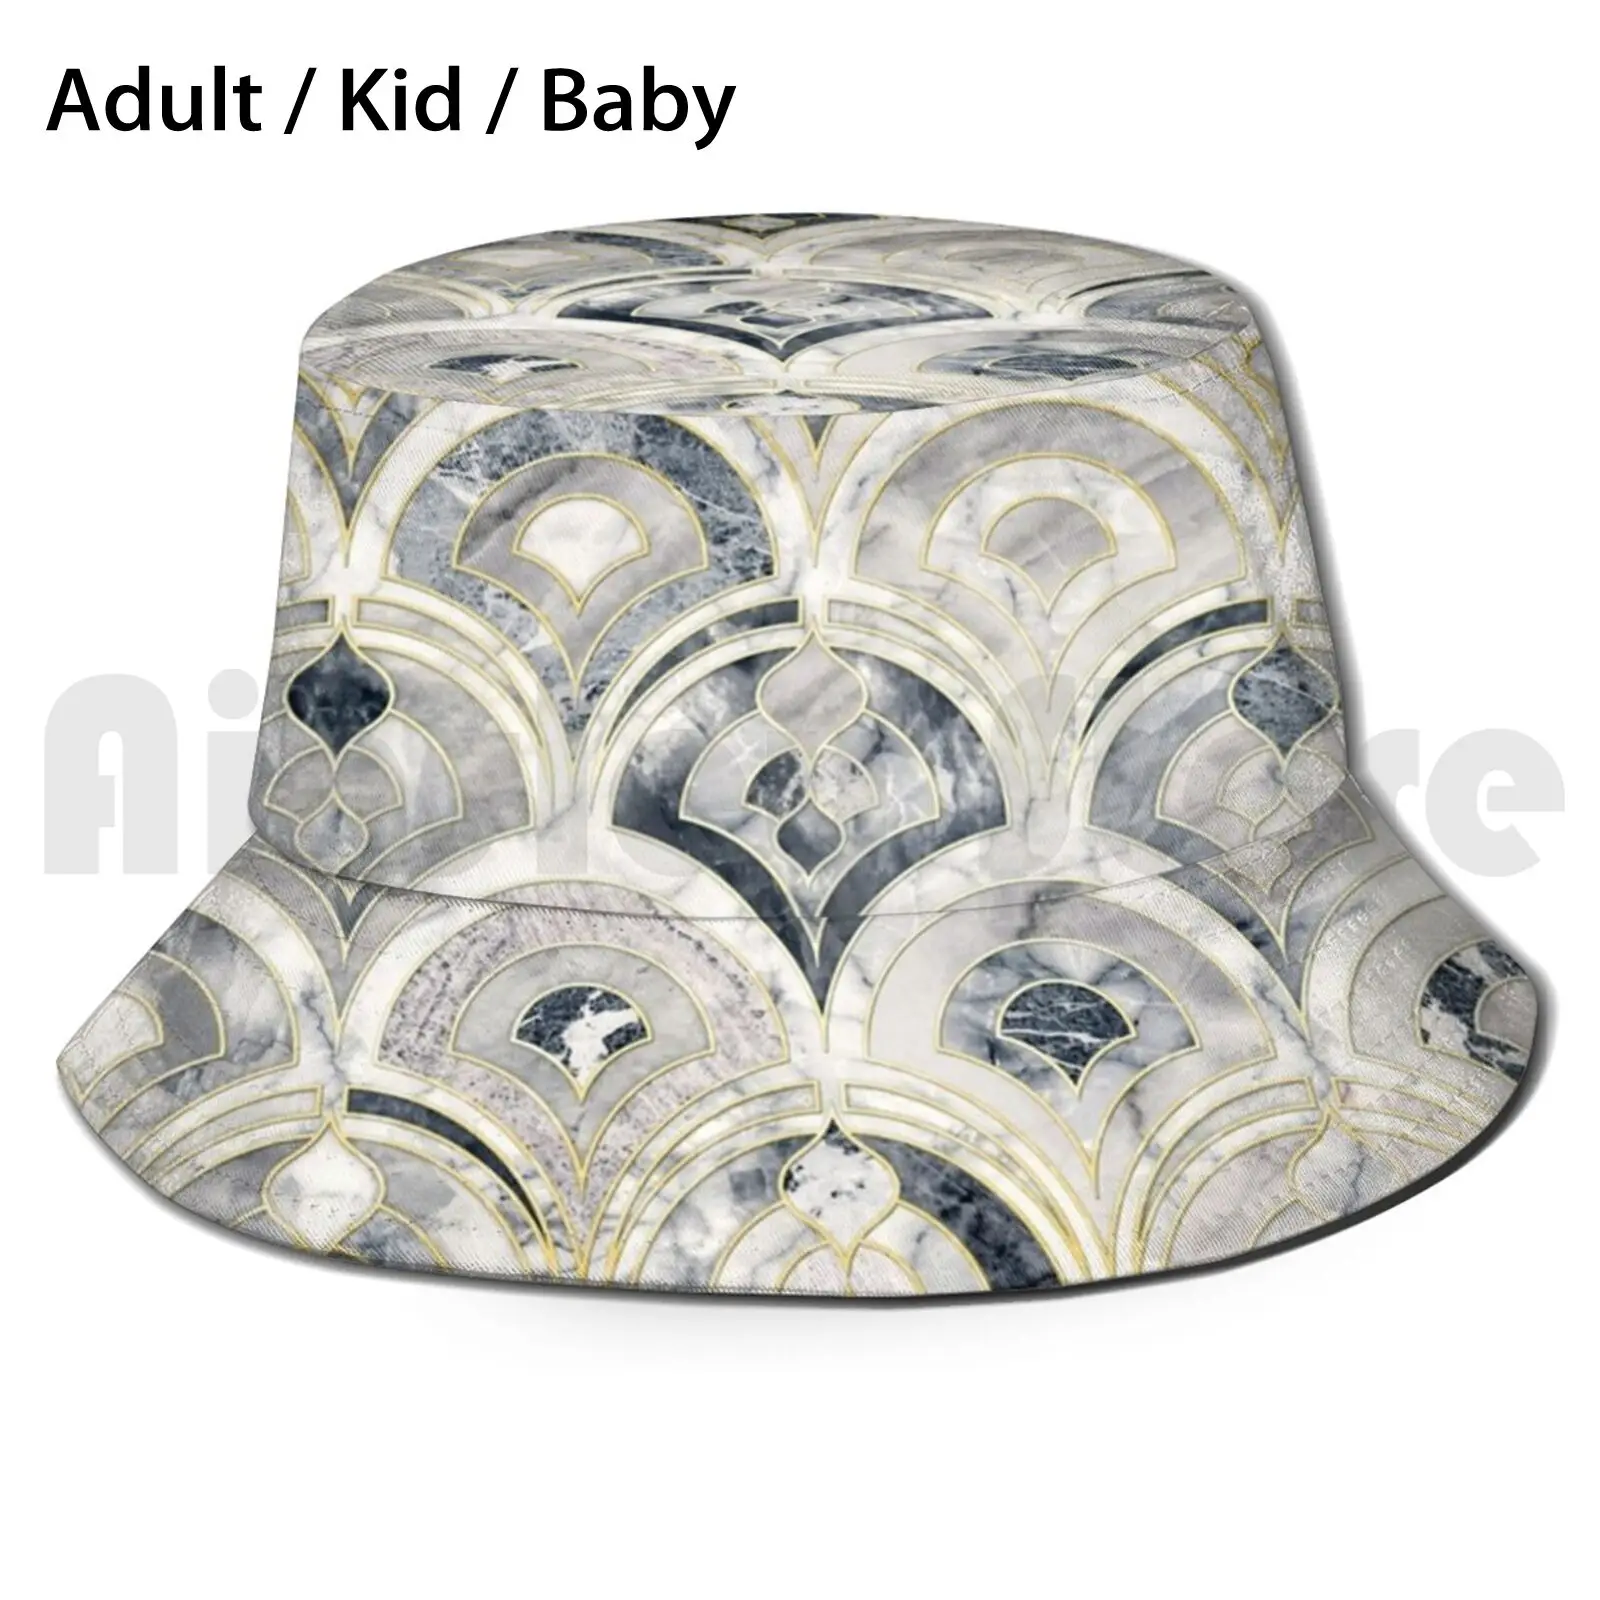 

Монохромная мраморная плитка в стиле арт-деко, Солнцезащитная шляпа, складная, с УФ-защитой, мраморная, монохромная, черно-белая светильник ...